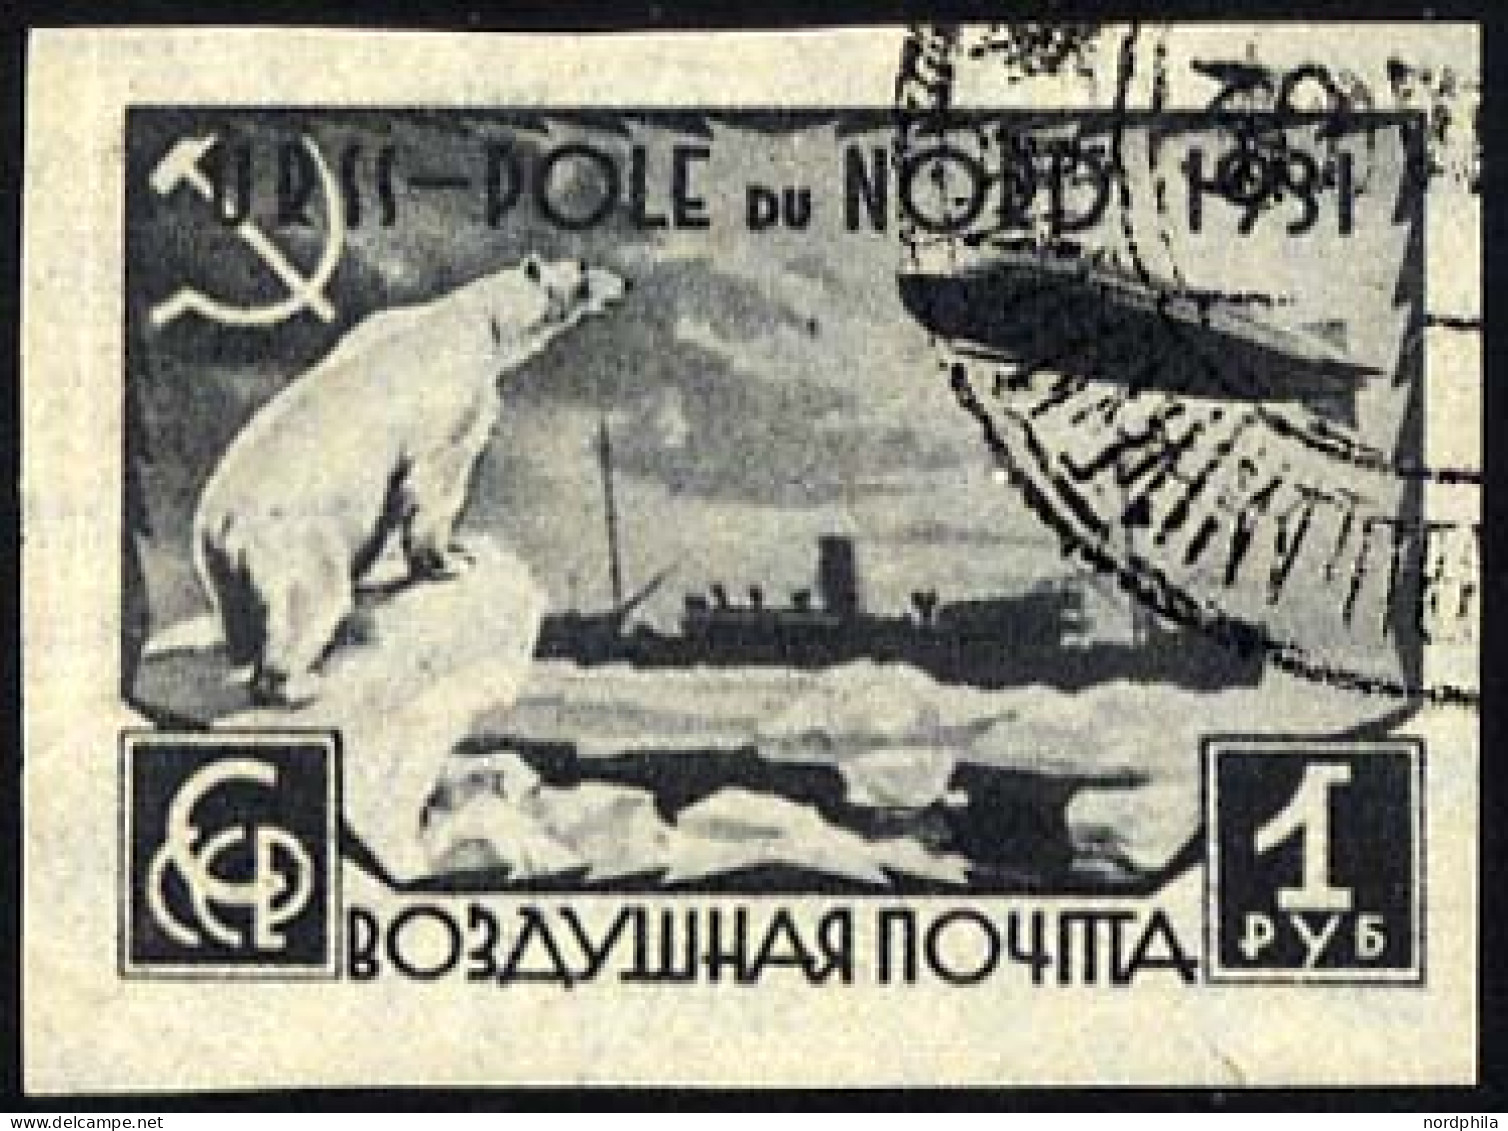 SOWJETUNION 404B O, 1931, 1 R. Polarfahrt, Ungezähnt, Pracht, Mi. 60.- - Gebraucht